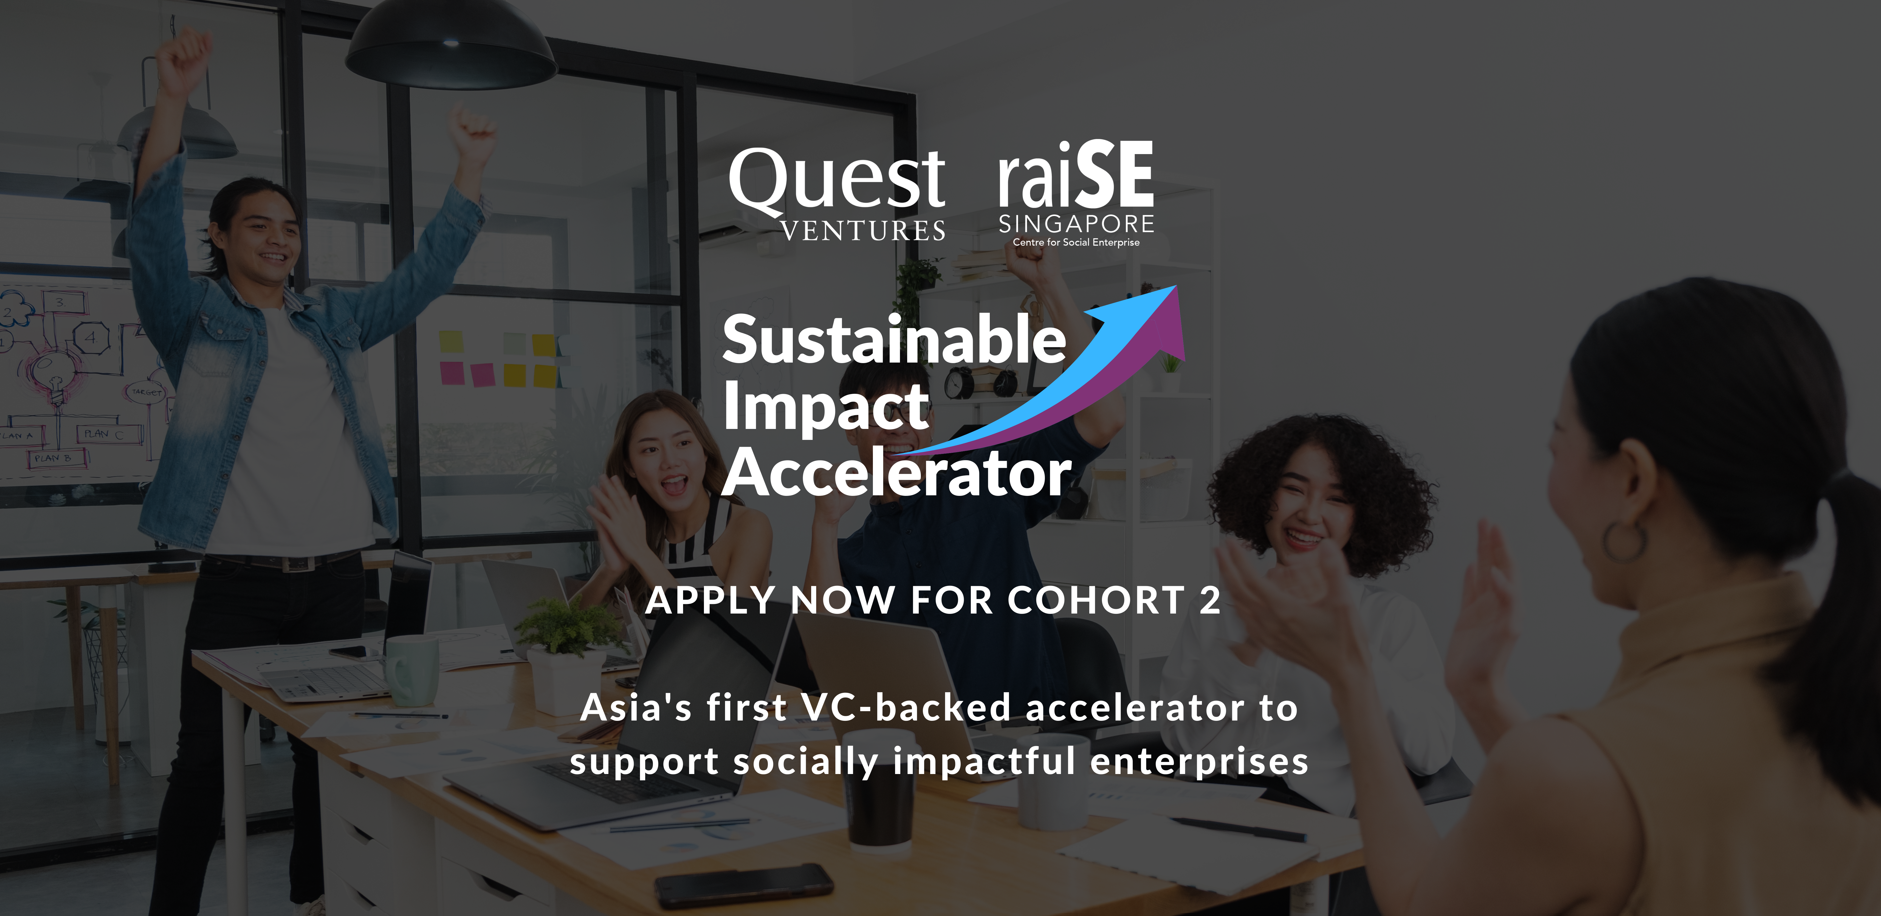 Quest Ventures & raiSE - Sustainable Impact Accelerator